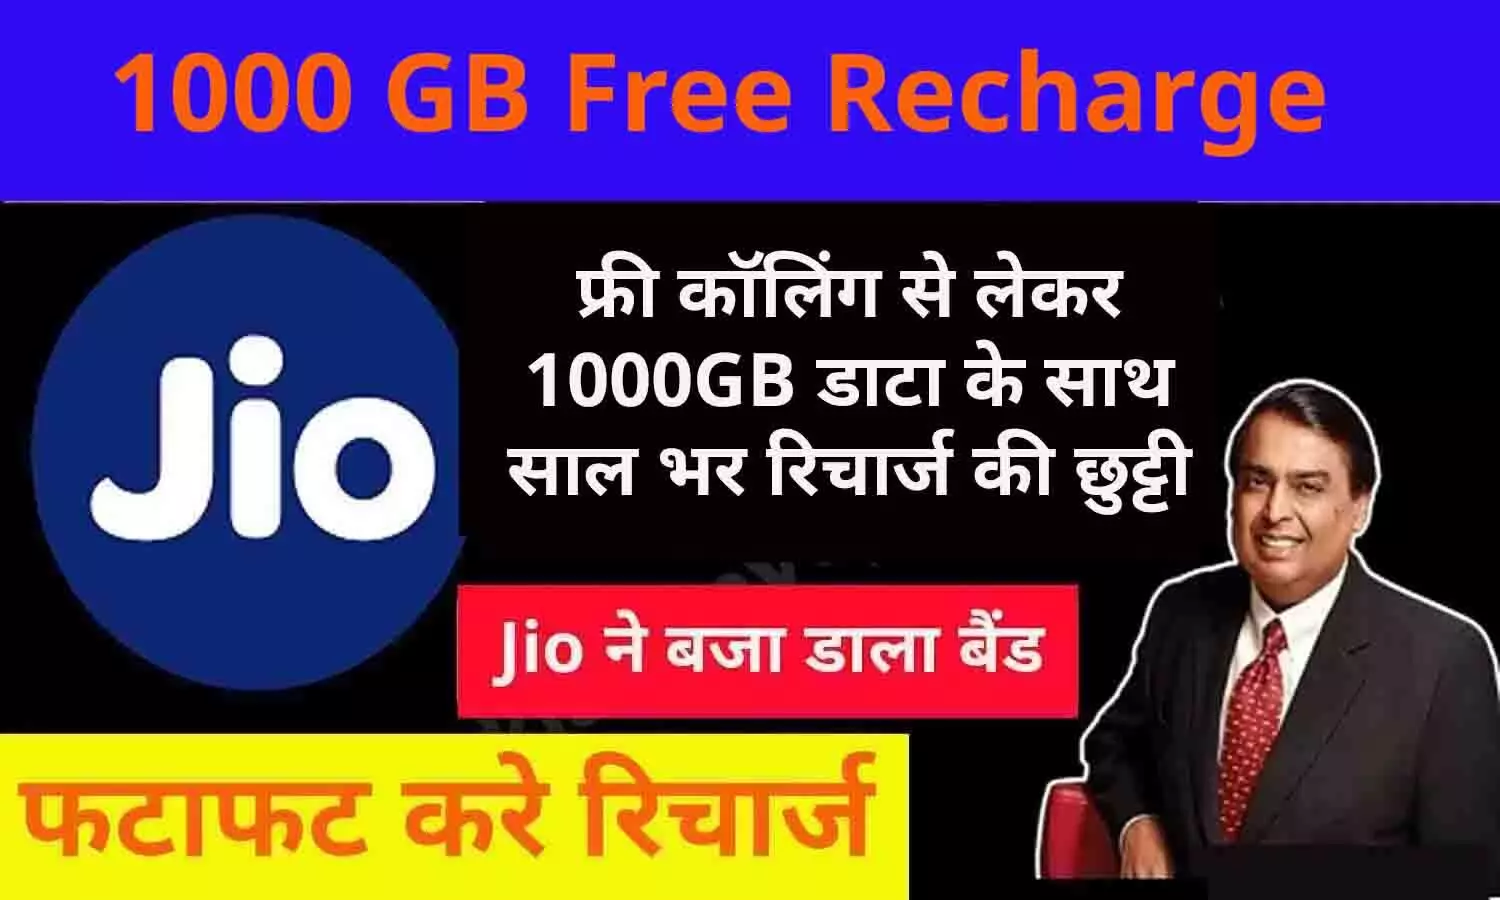 1000 GB Free Recharge: मुकेश अम्बानी ने दिया 44 करोड़ जियो ग्राहकों को दिया धमाकेदार गिफ्ट, फ्री कॉलिंग से लेकर 1000GB डाटा के साथ साल भर रिचार्ज की छुट्टी